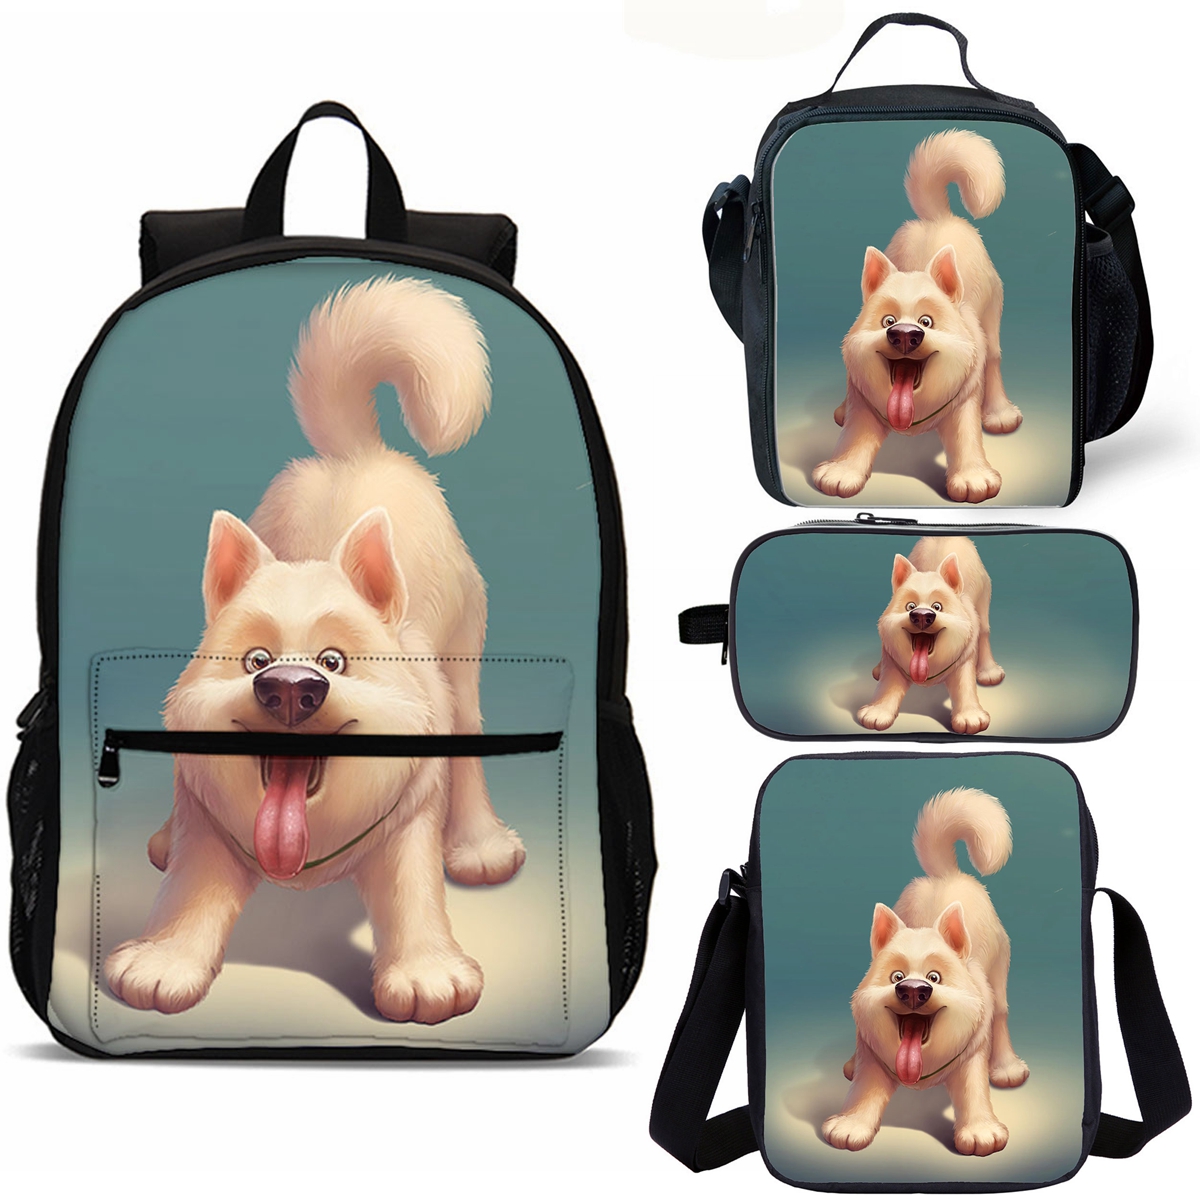 Trendy Husky Dog Print Kids School Merch 18" School Backpack Lunch Bag Shoulder Bag Pencil Case